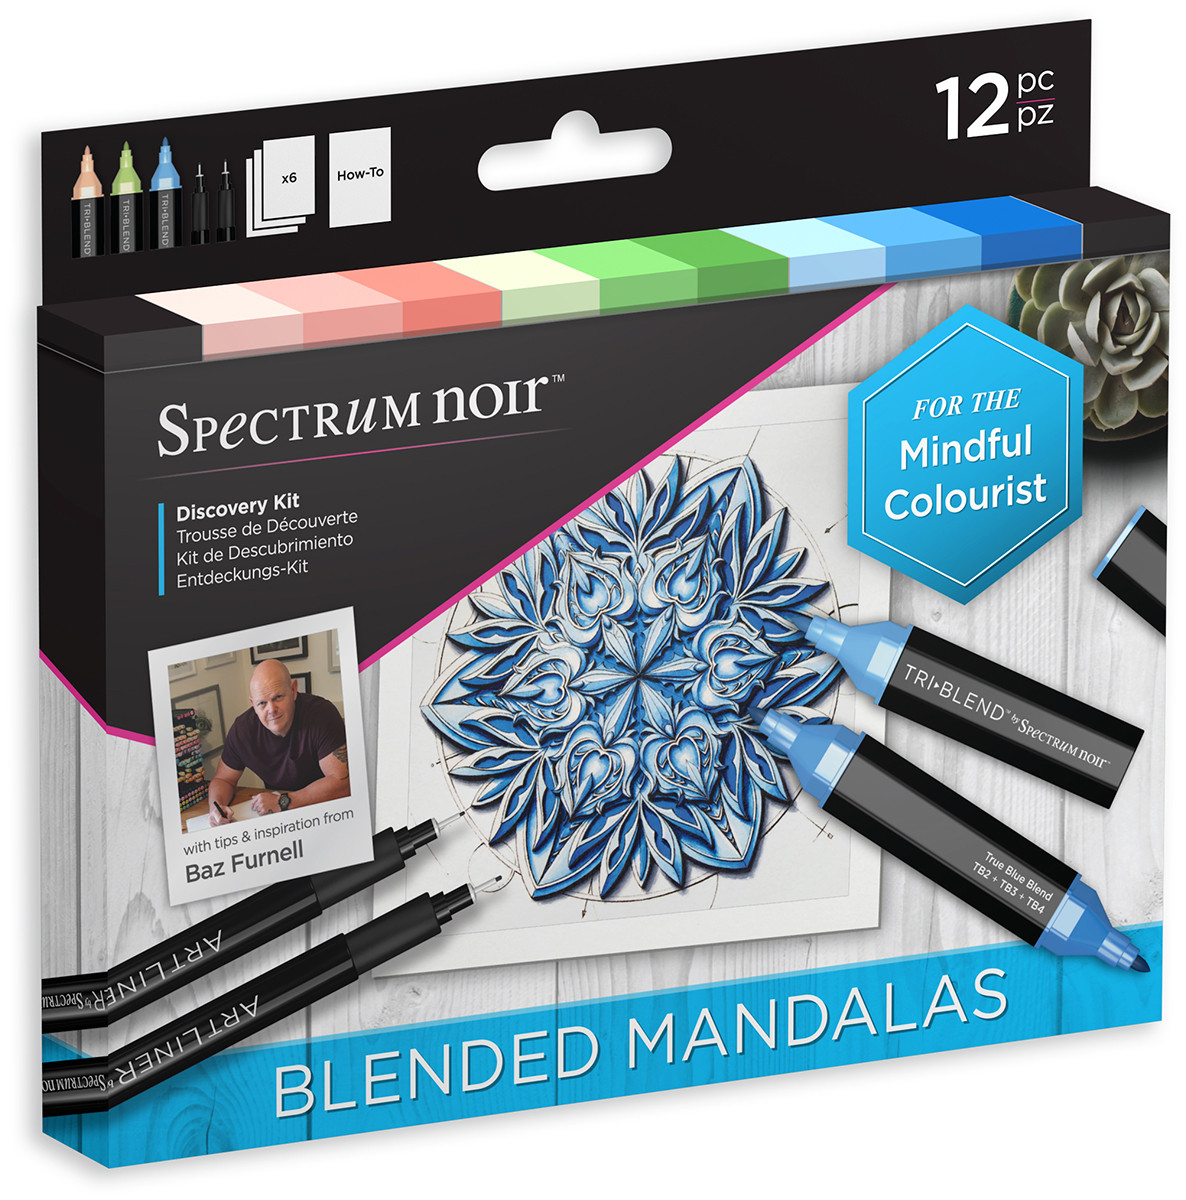 Spectrum Noir Discovery Kit - Blended Mandalas